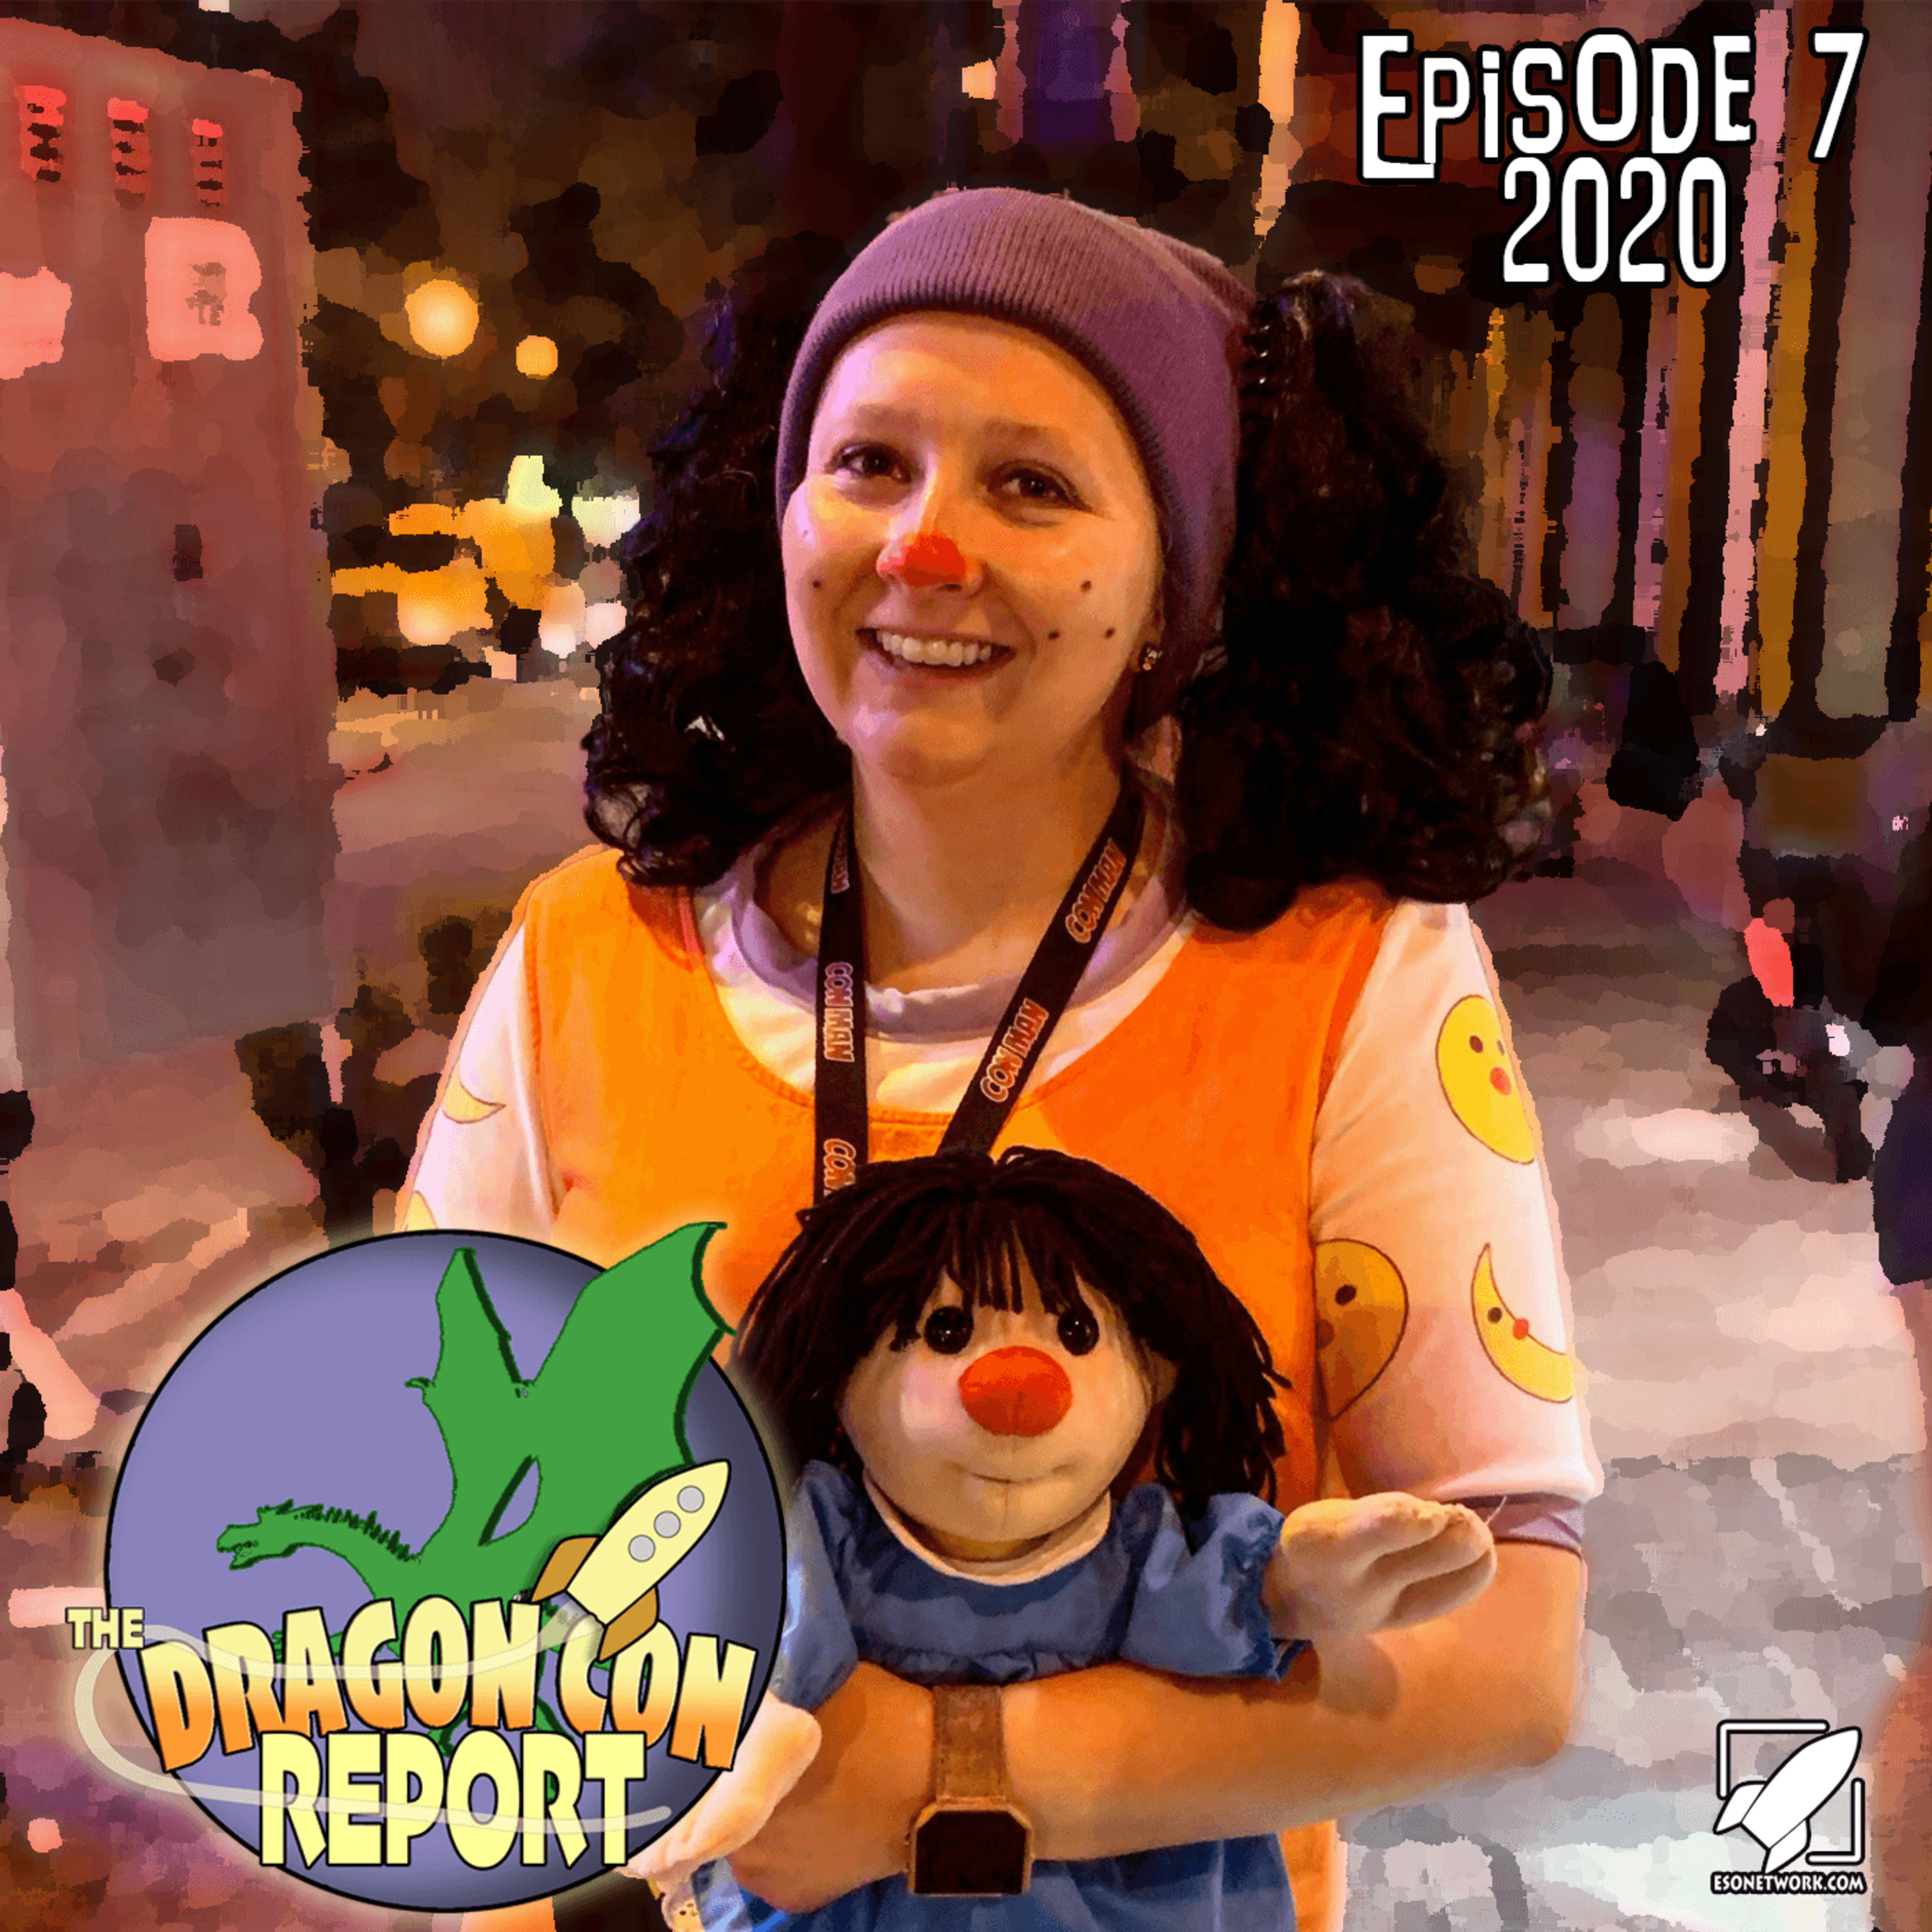 The 2020 Dragon Con Report Episode 7